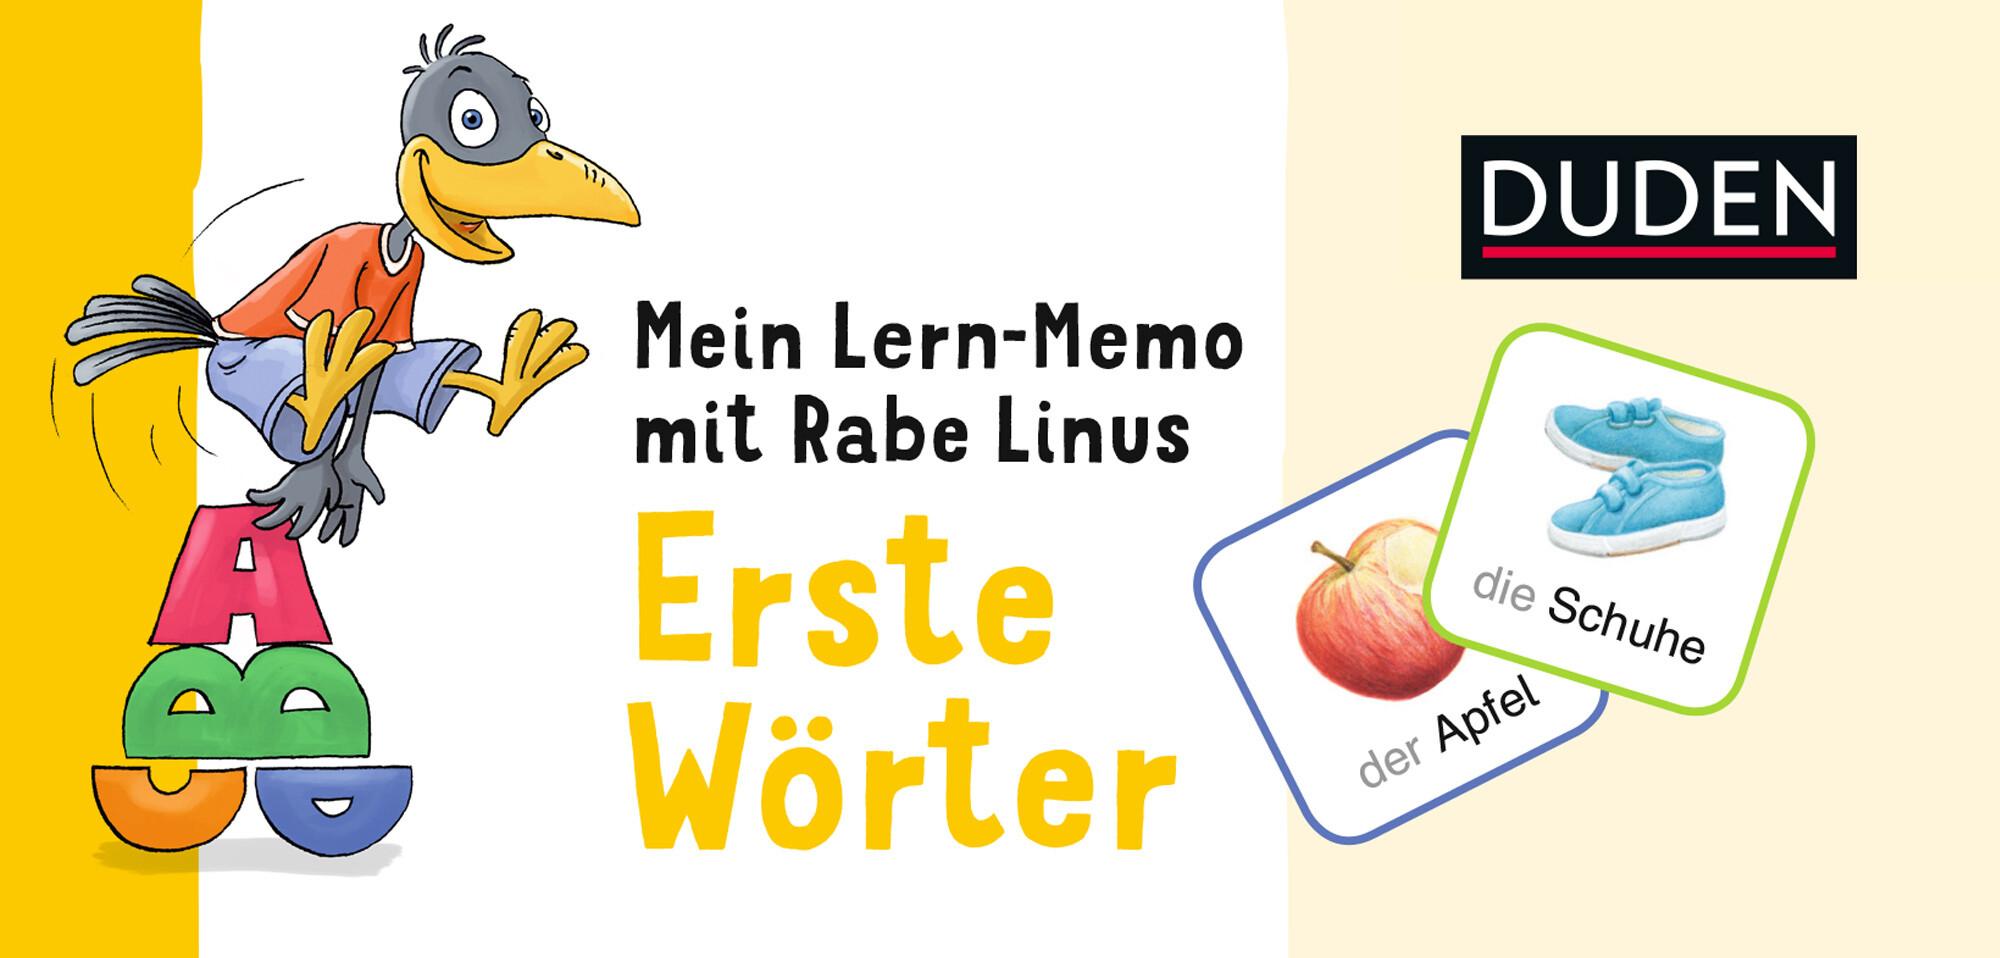 Duden: Mein Lern-Memo mit Rabe Linus - Erste Wörter